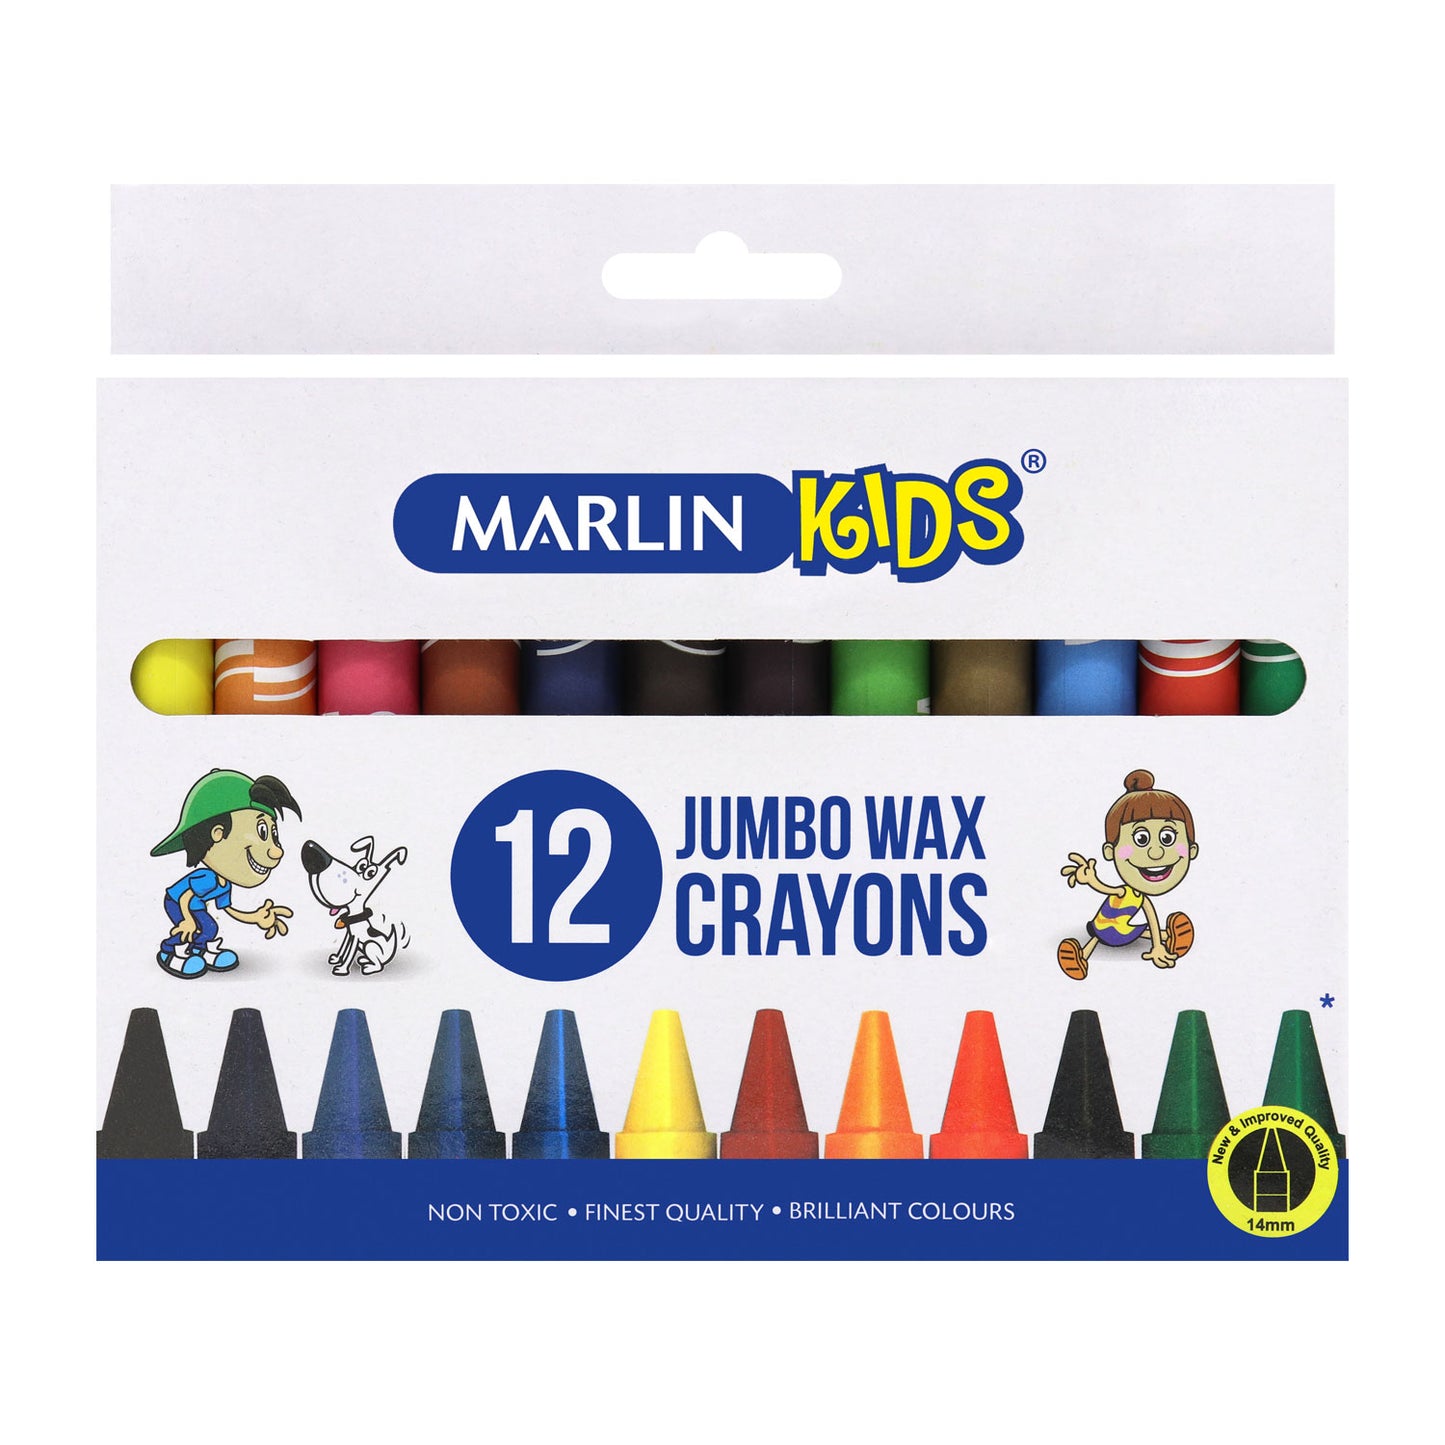 Marlin Kids Jumbo Wax Crayons (14mm, 12 Crayons per pack) - 12 Boxes of 12 Crayons